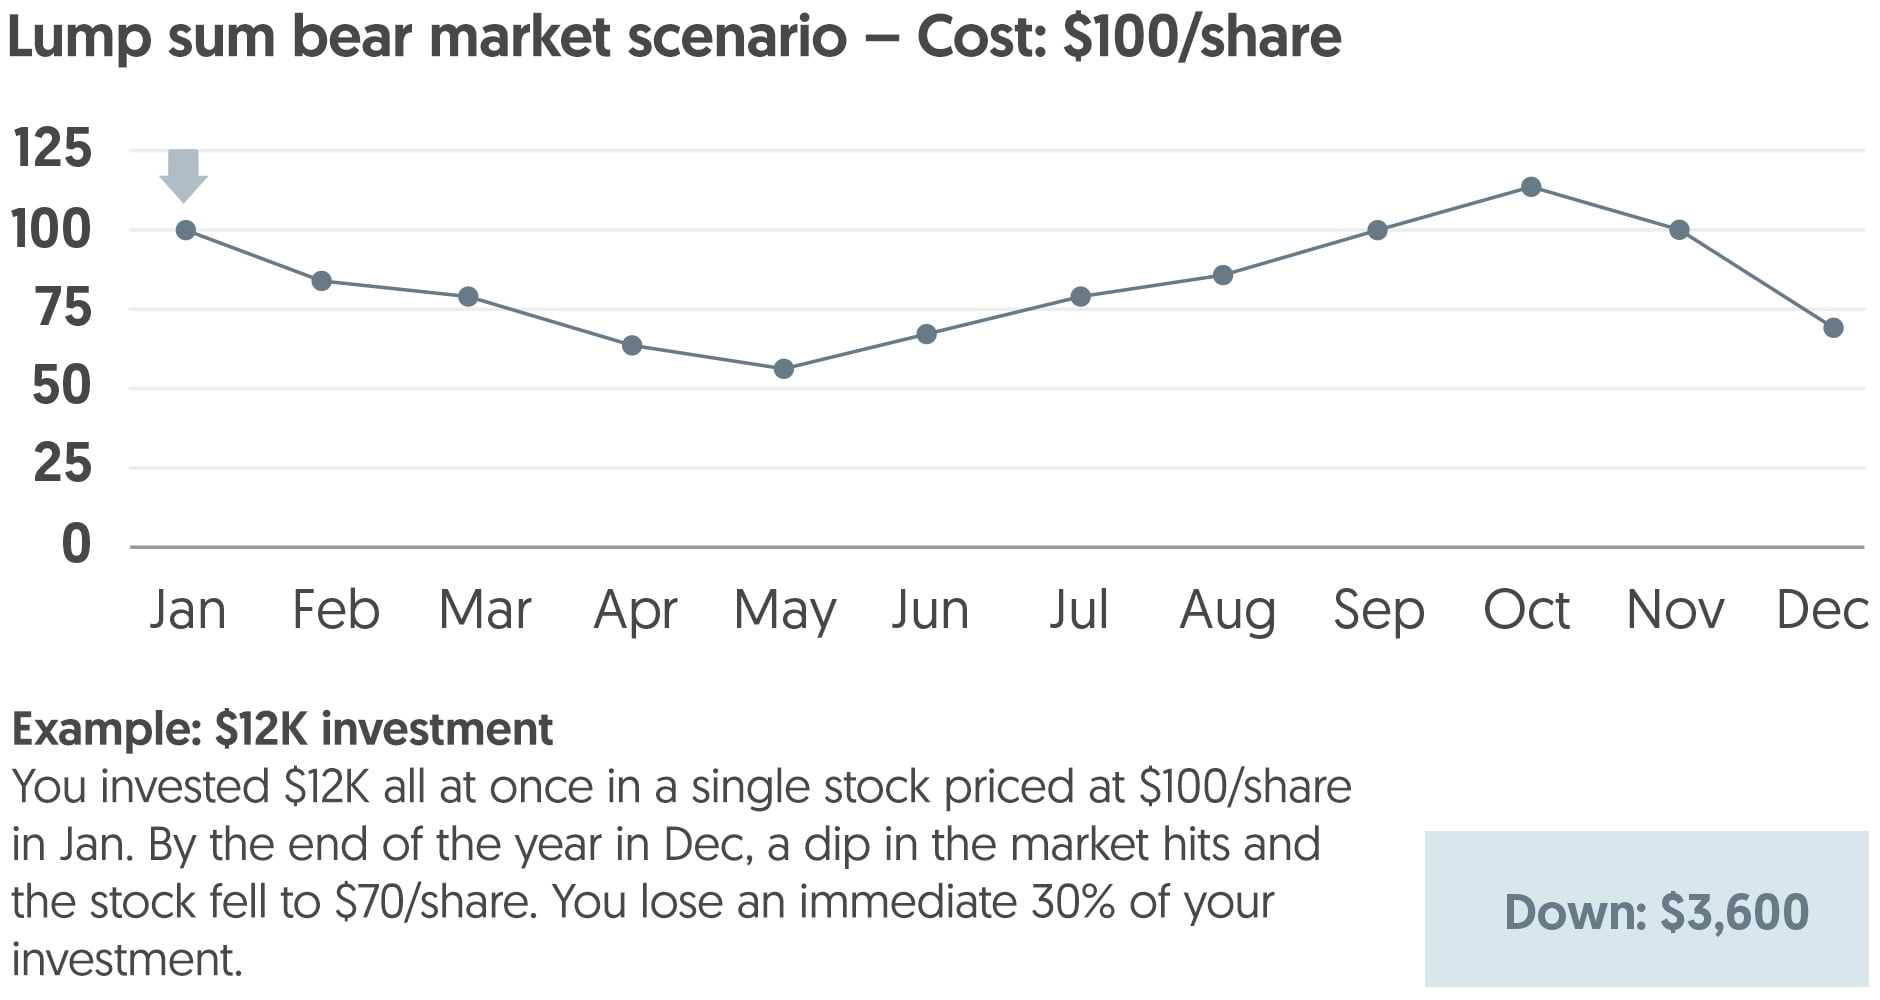 Bear market scenario using lump sum investment